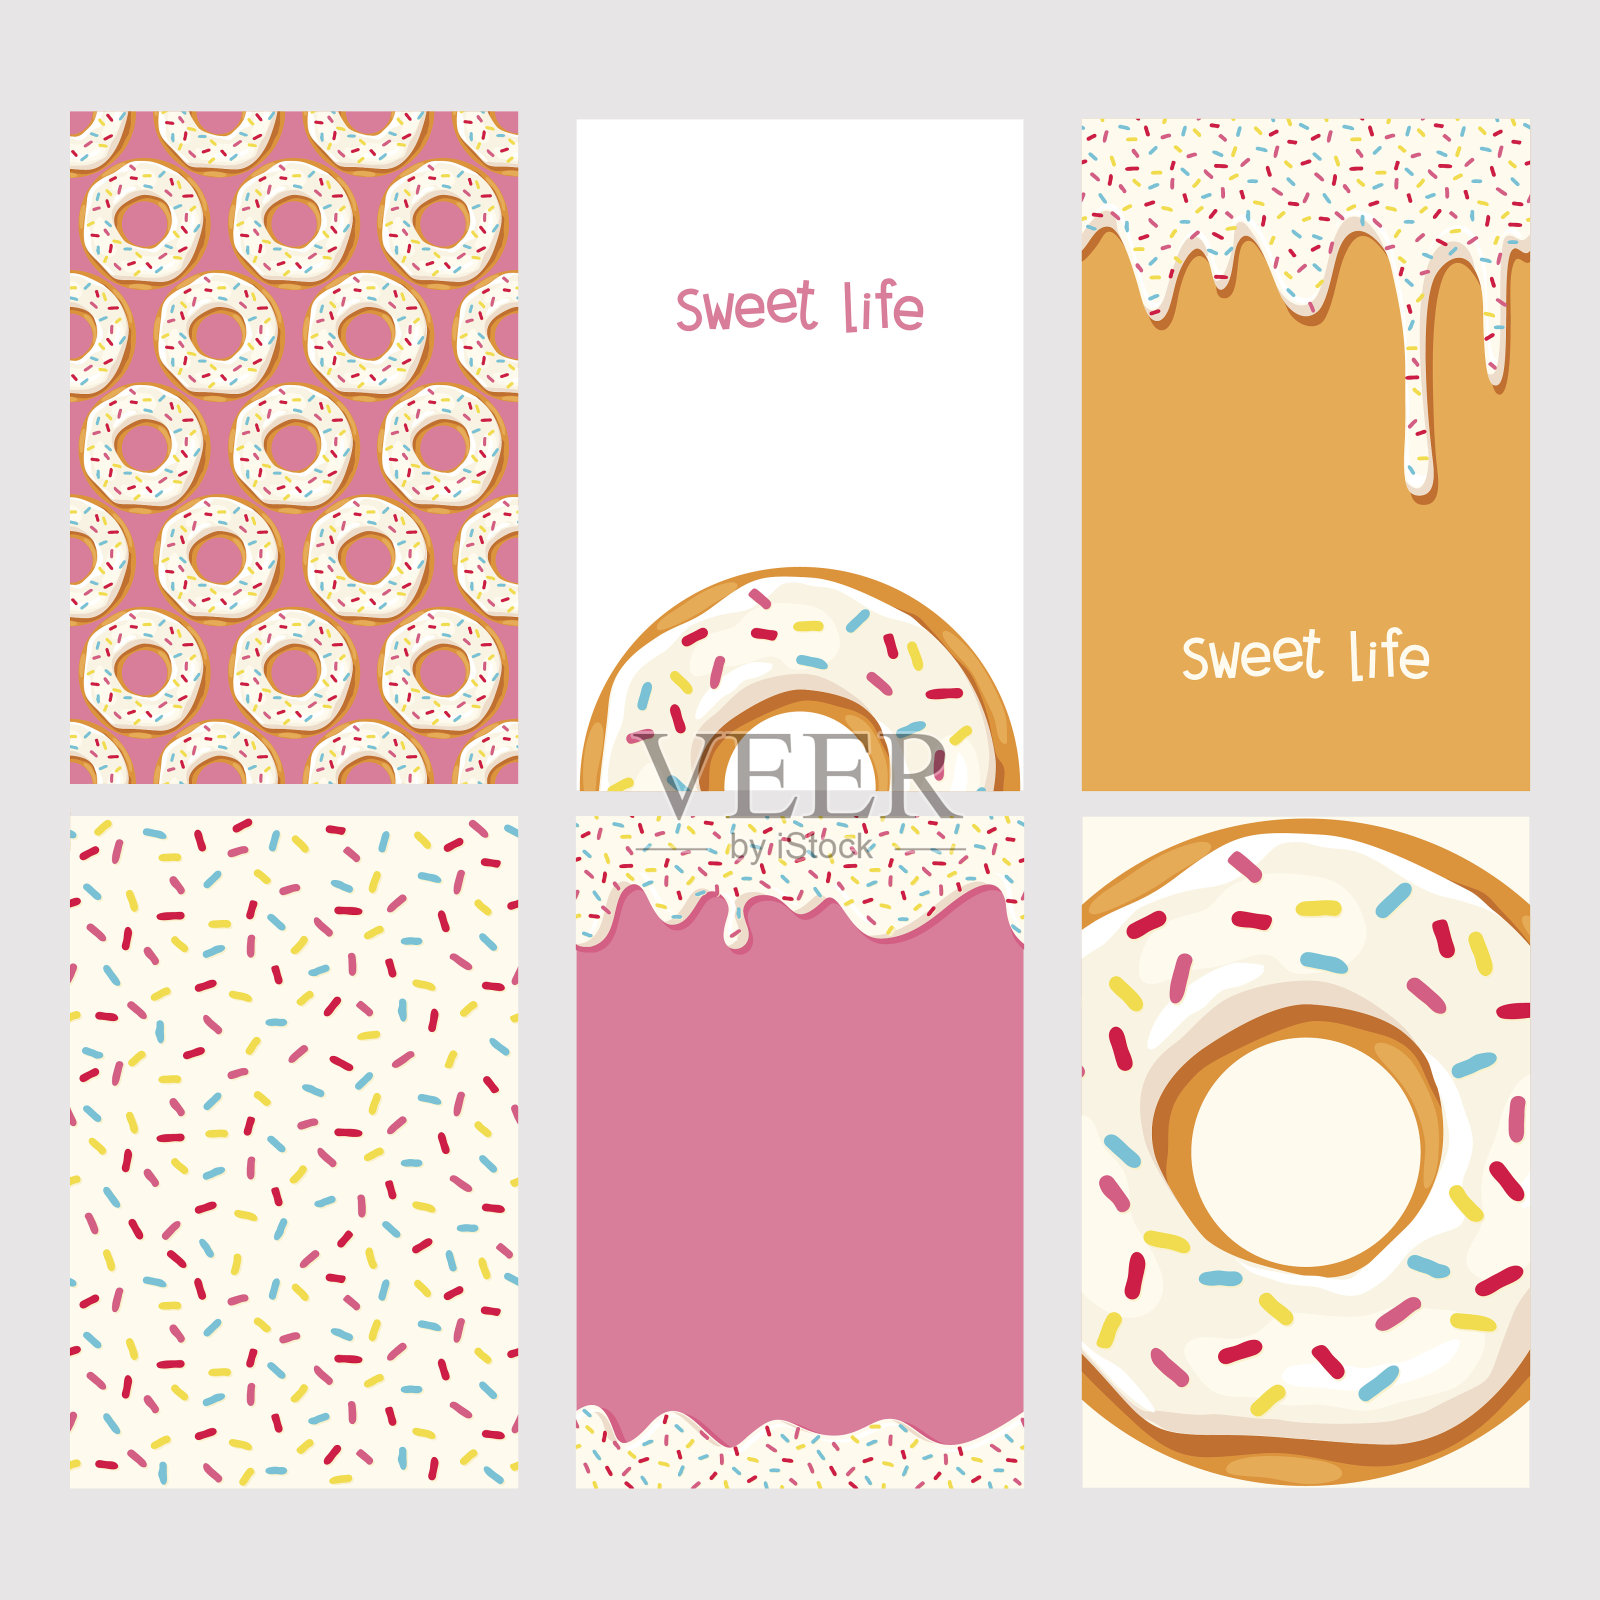 一套粉红釉的甜甜圈插画图片素材